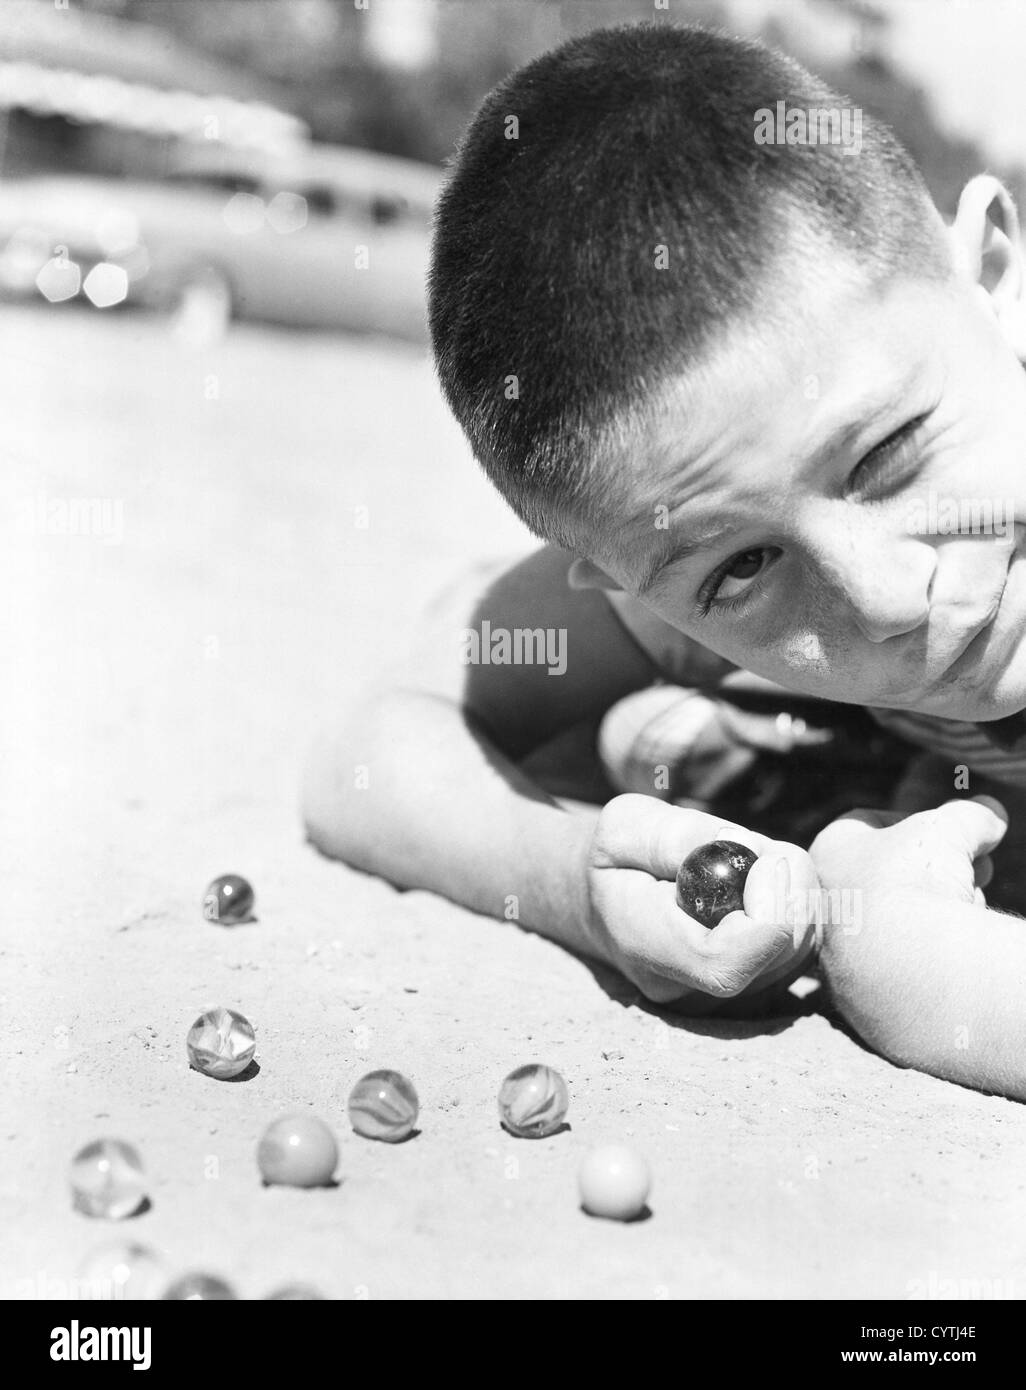 Close-up de joven jugando a las canicas en la tierra Foto de stock